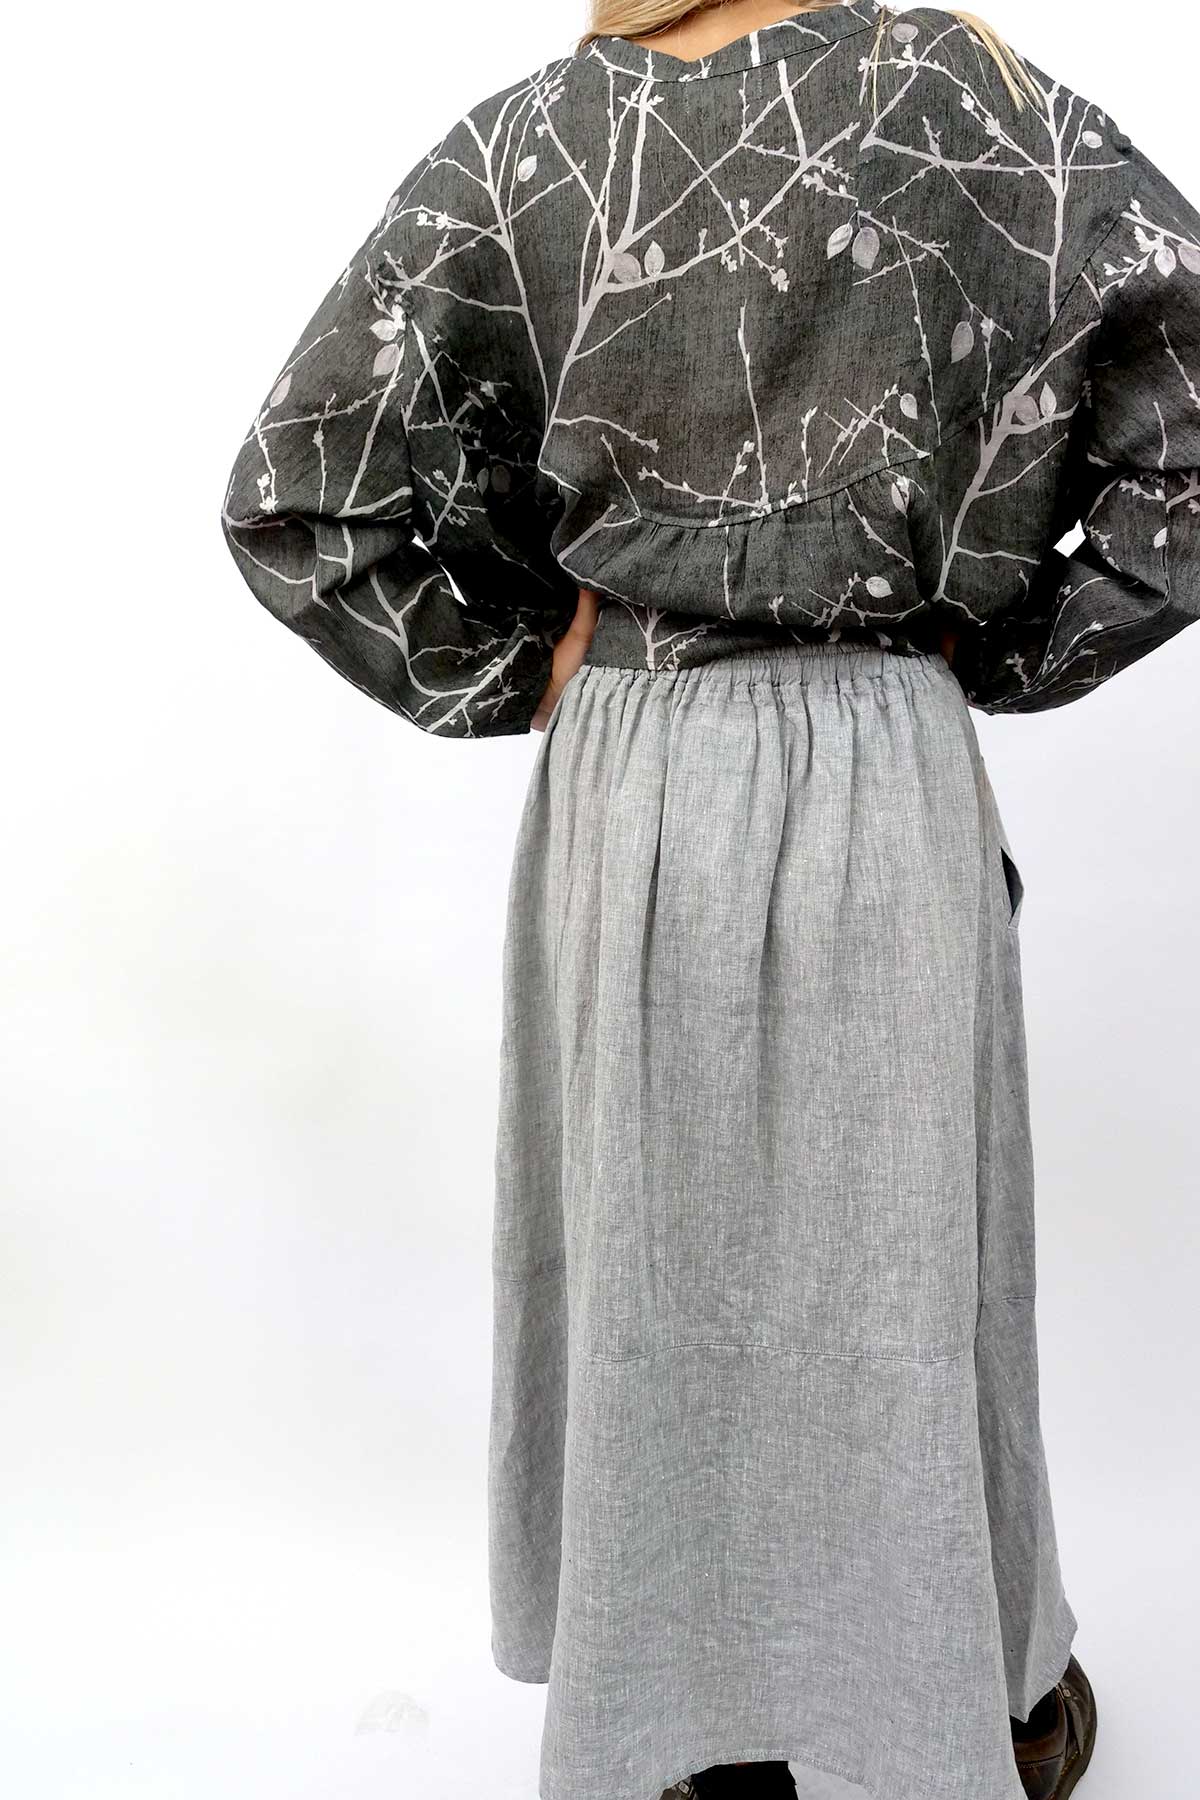 Naturals by O & J Linen Skirt - Silver